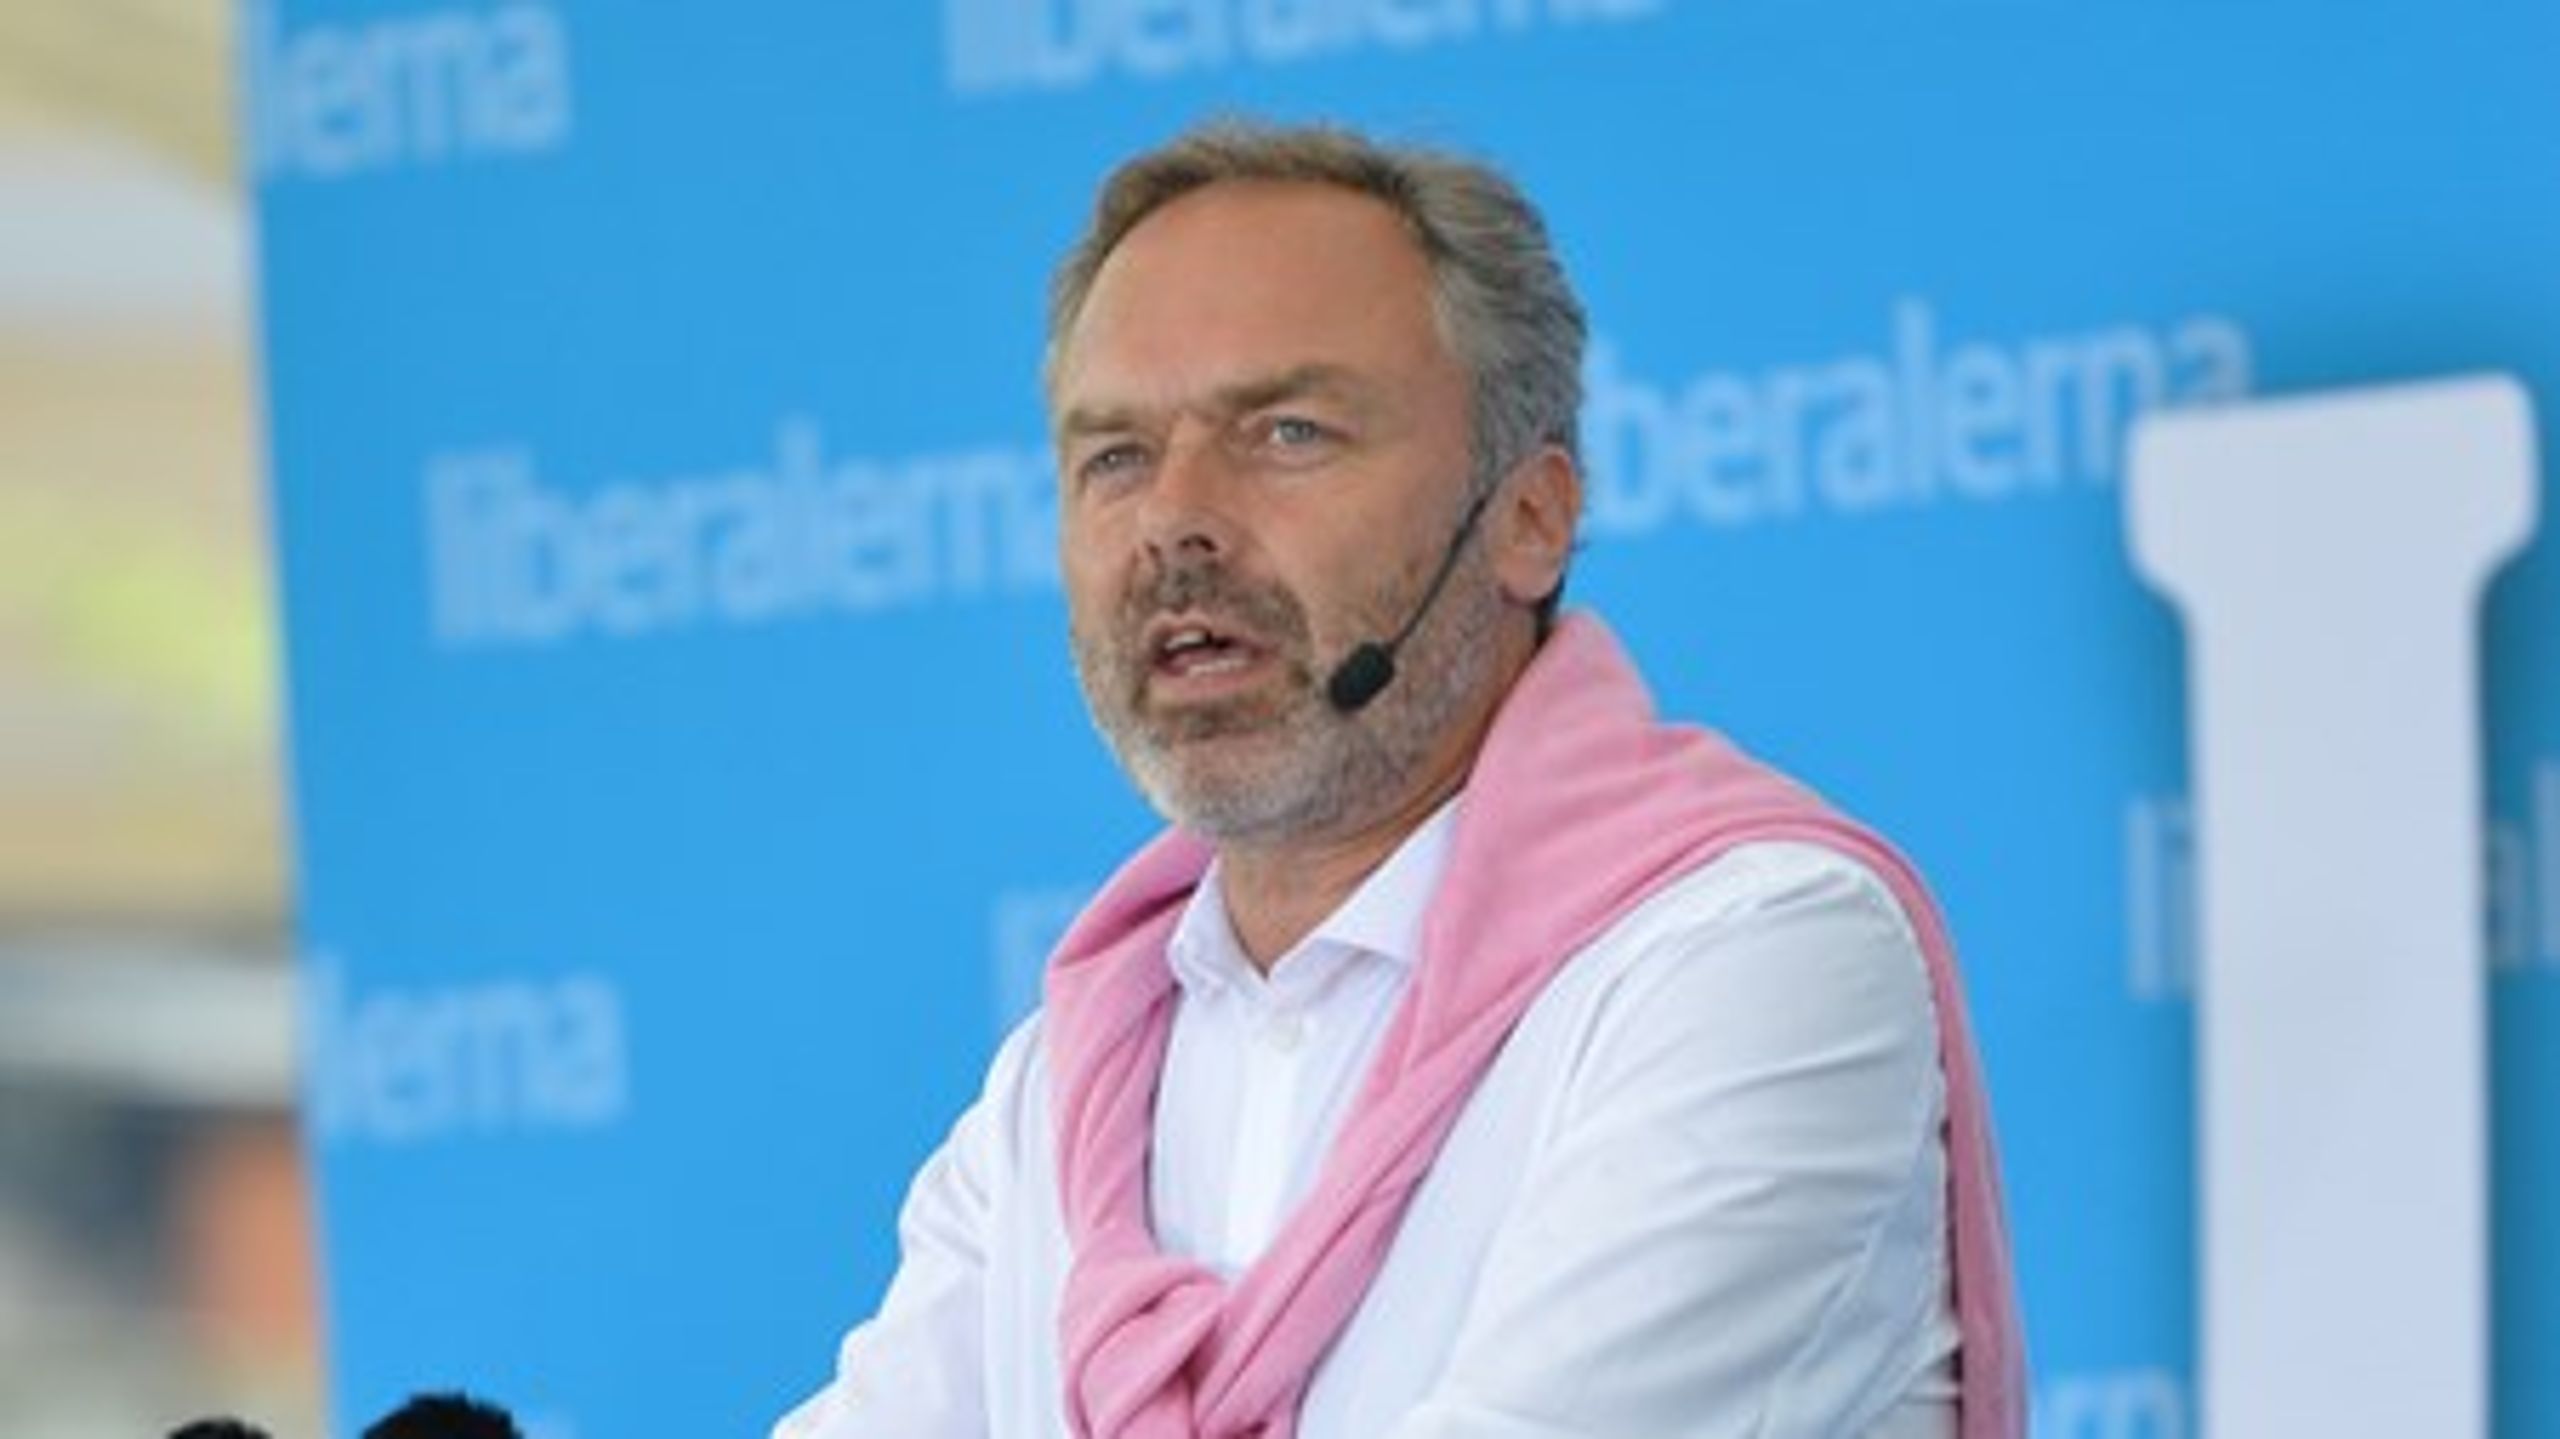 Folkpartiets ledare Jan Björklund avslutade årets Almedalsvecka.<br>